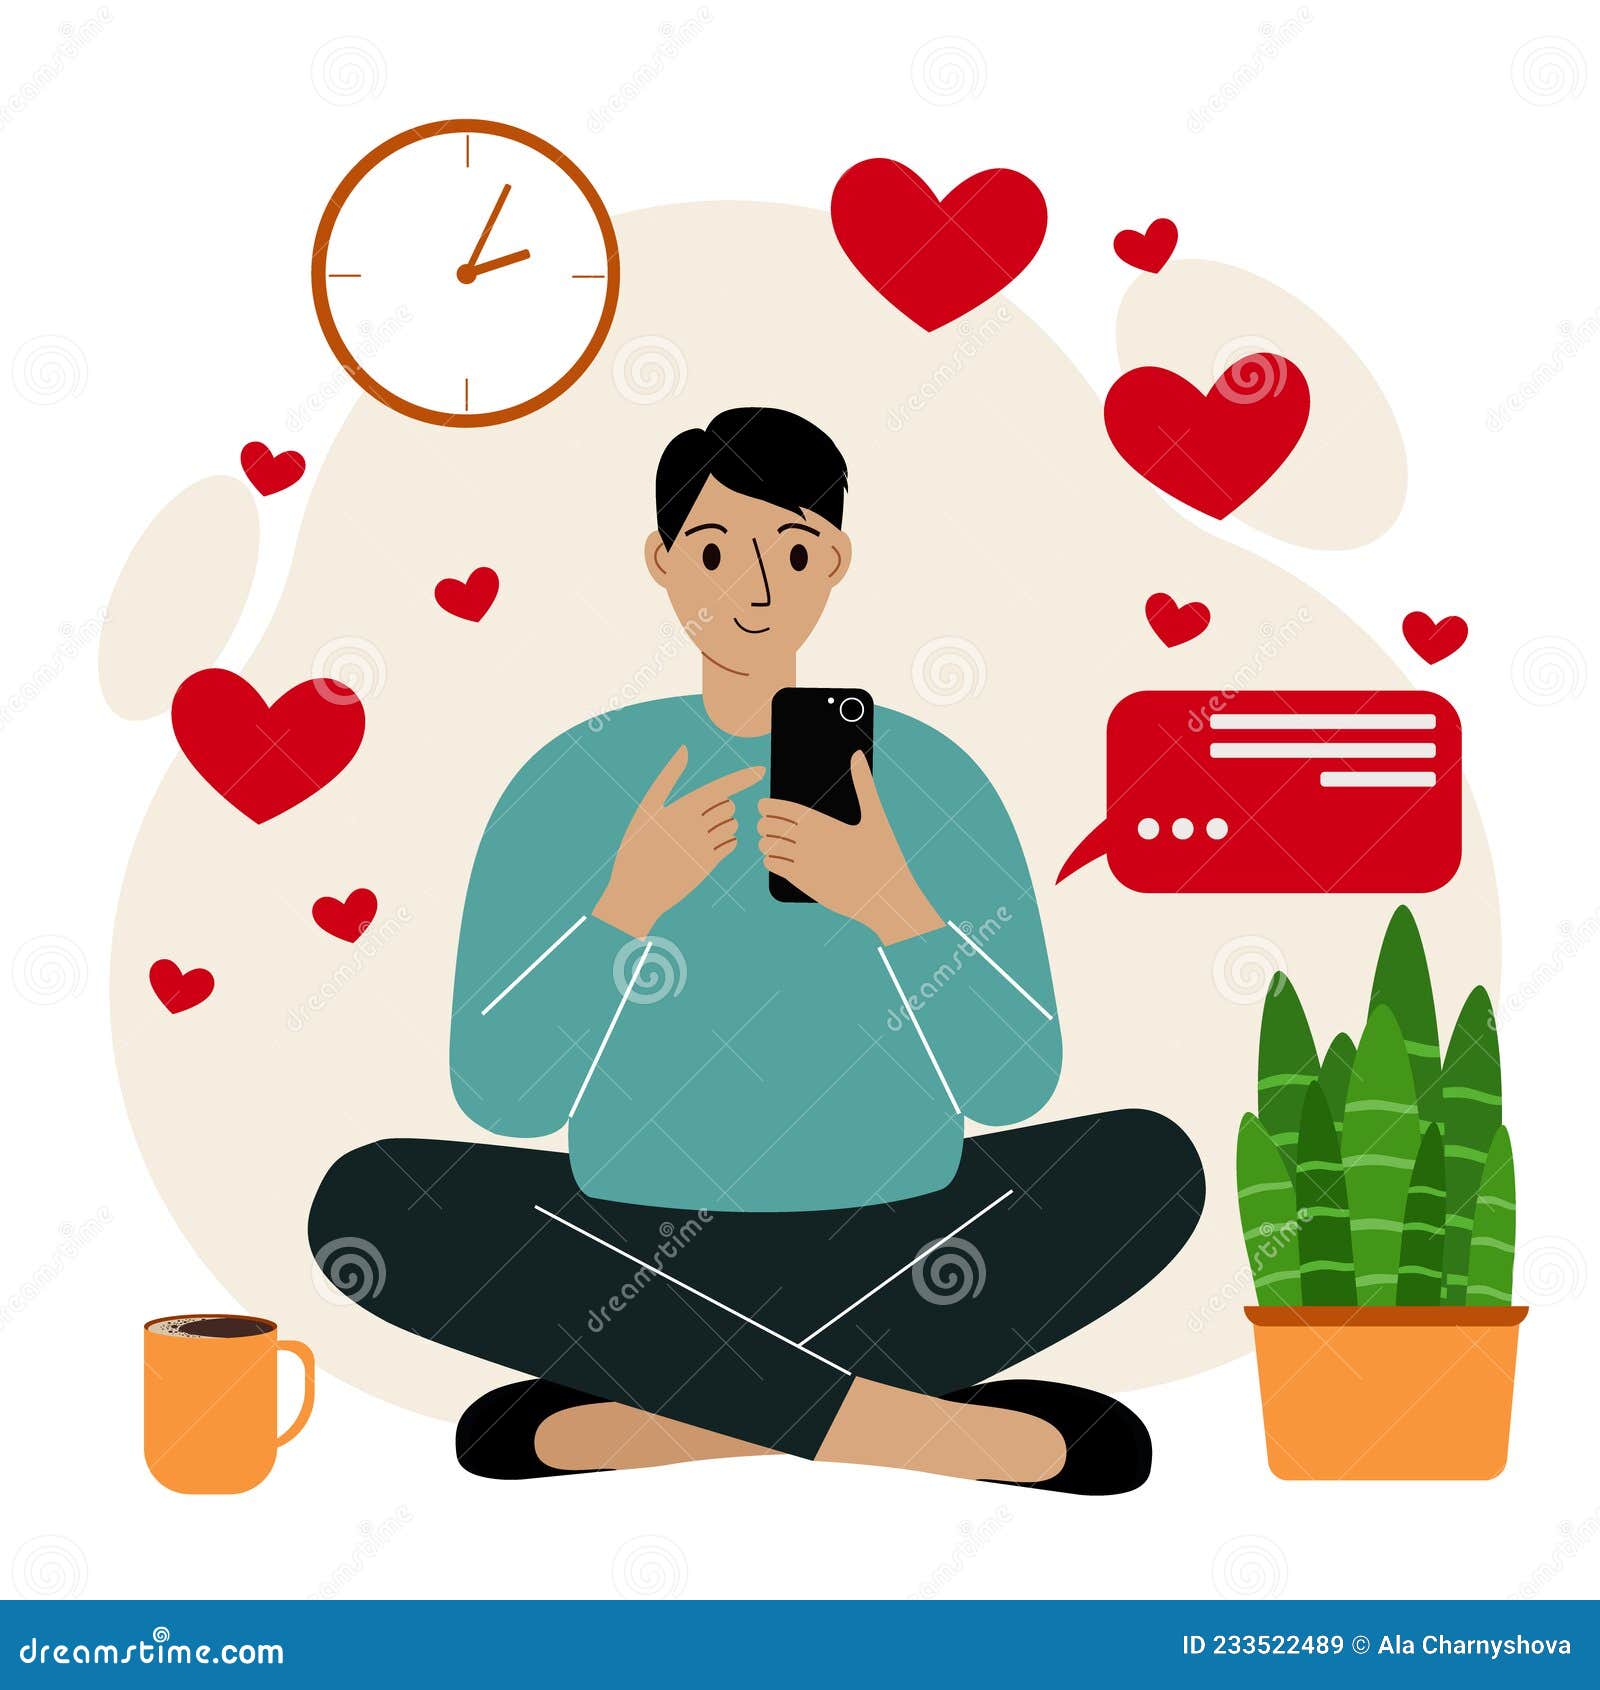 Dating around online